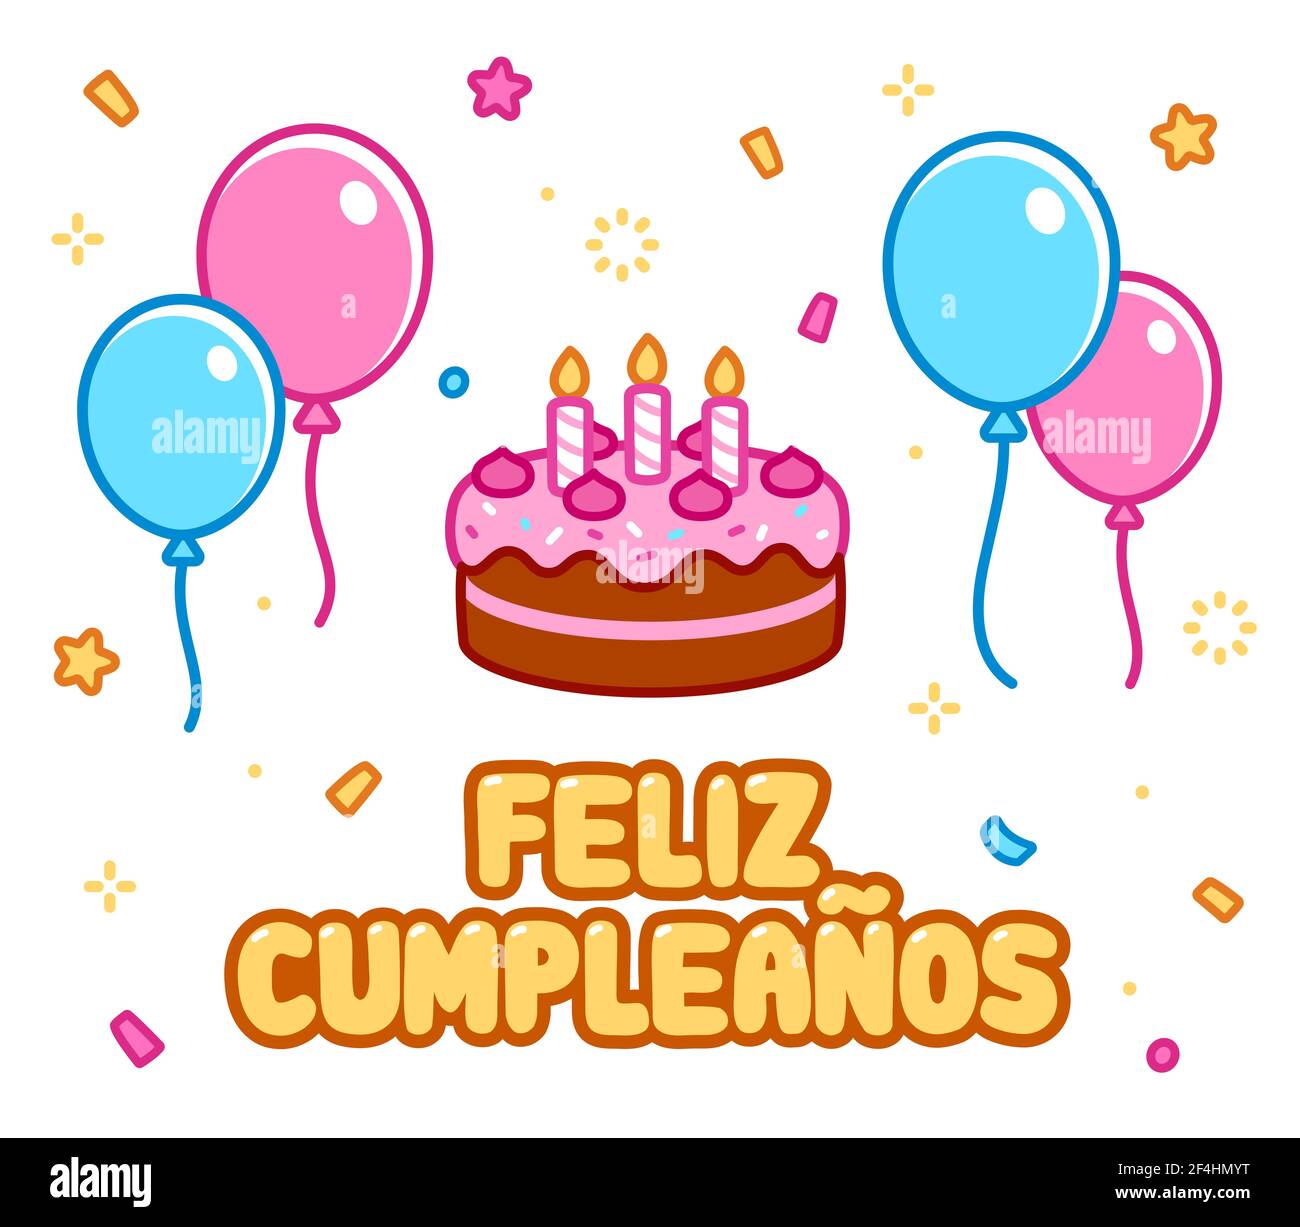 Feliz cumpleaños, Happy Birthday auf Spanisch. Cartoon Grußkarte mit Geburtstagskuchen, Ballons und Konfetti. Cute Doodle Zeichnung, Vektor-Illustration Stock Vektor